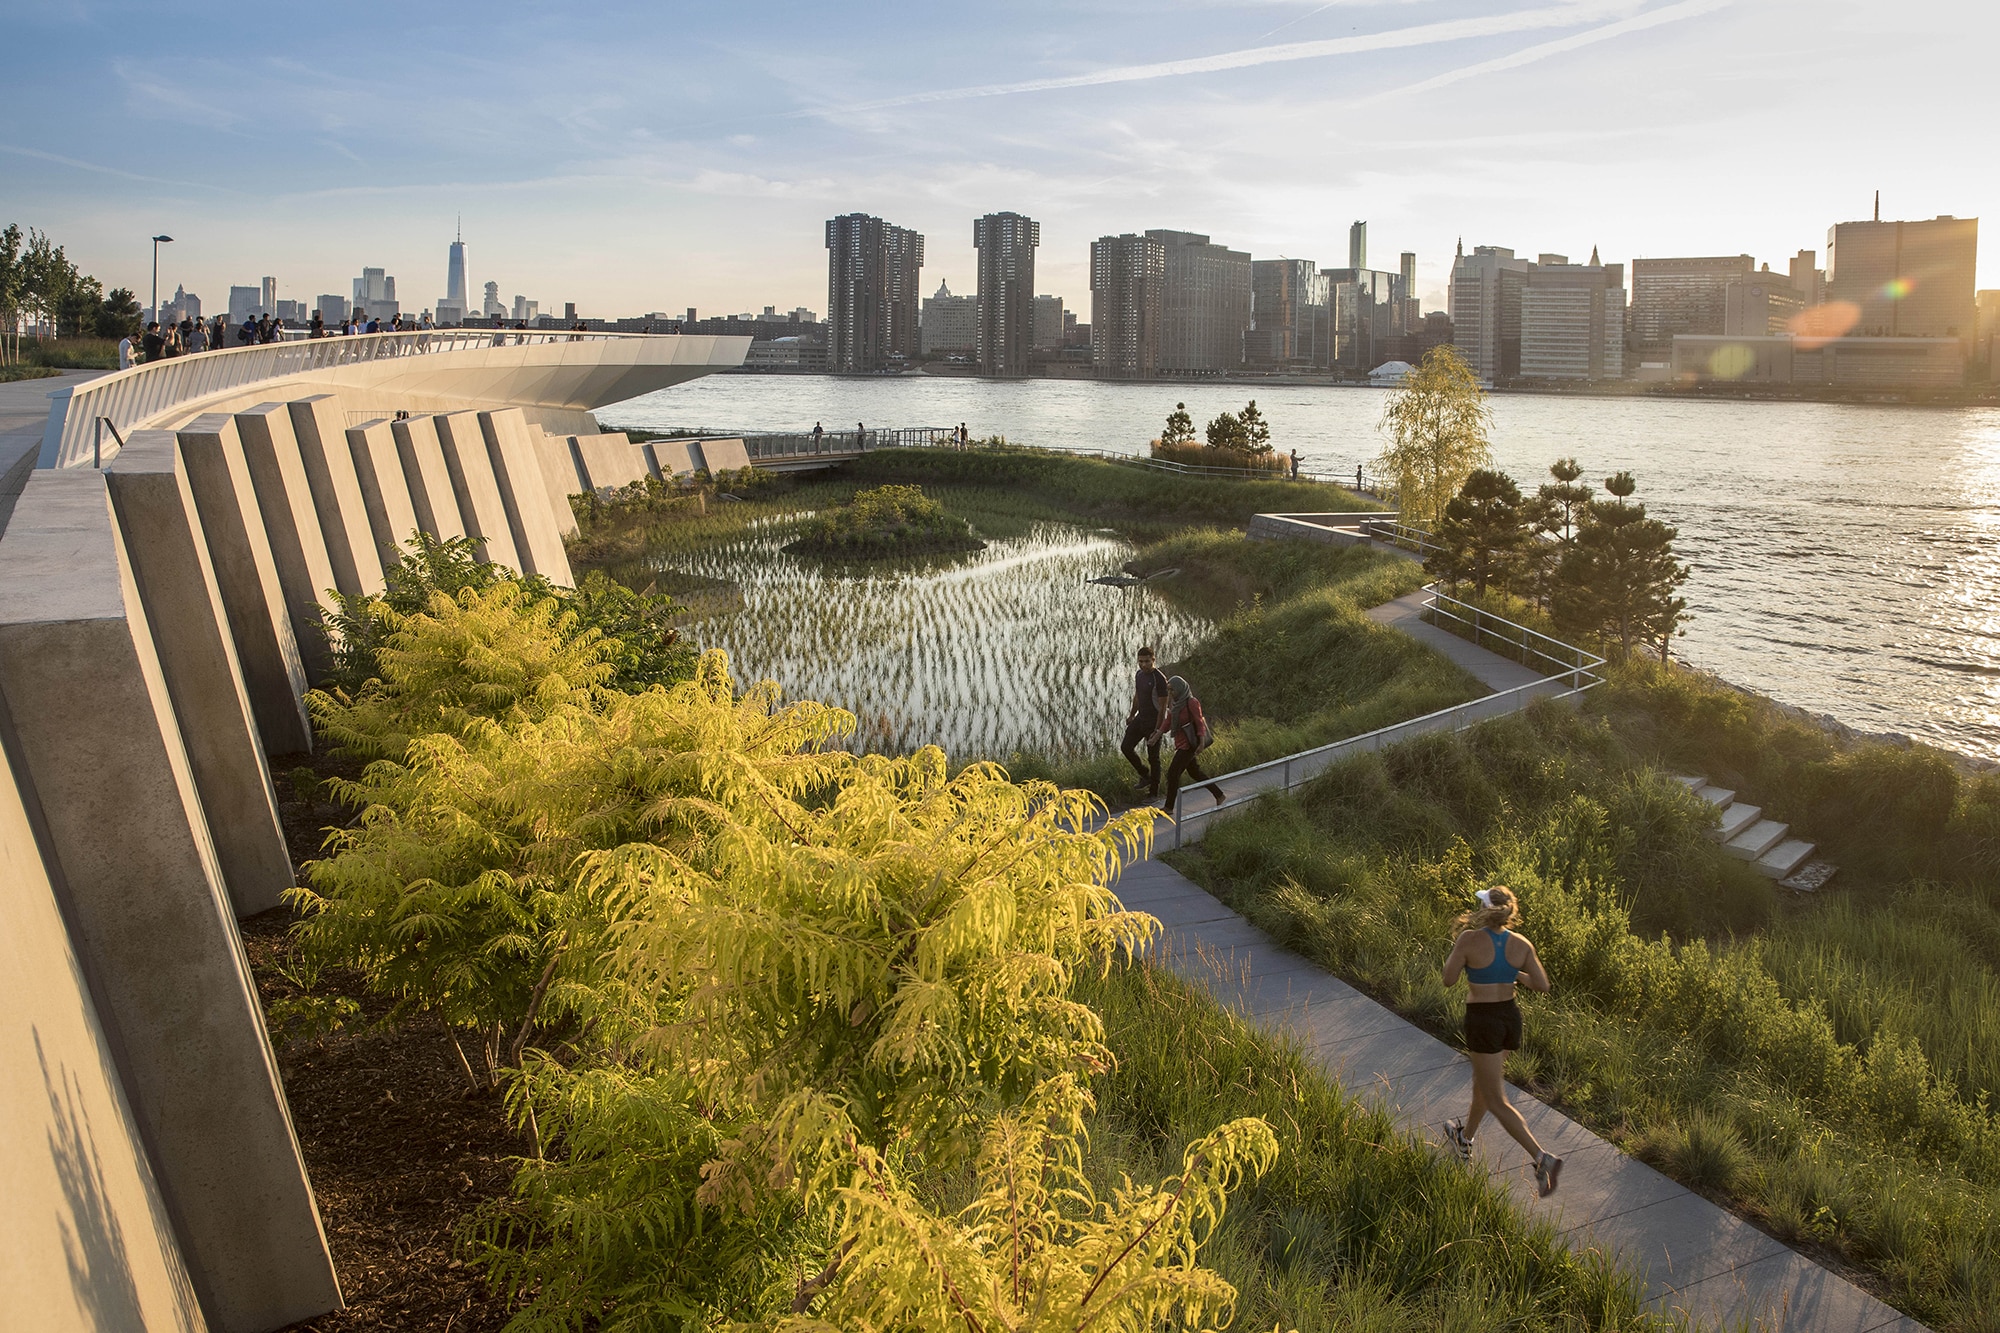 Sozial, divers, nachhaltig: Die Ausstellung „Architecture Now“ im MOMA zeigt zwölf aktuelle Architektur-Projekte in New York. Foto: Lloyd/SWA, SWA/Balsley und WEISS/MANFREDI